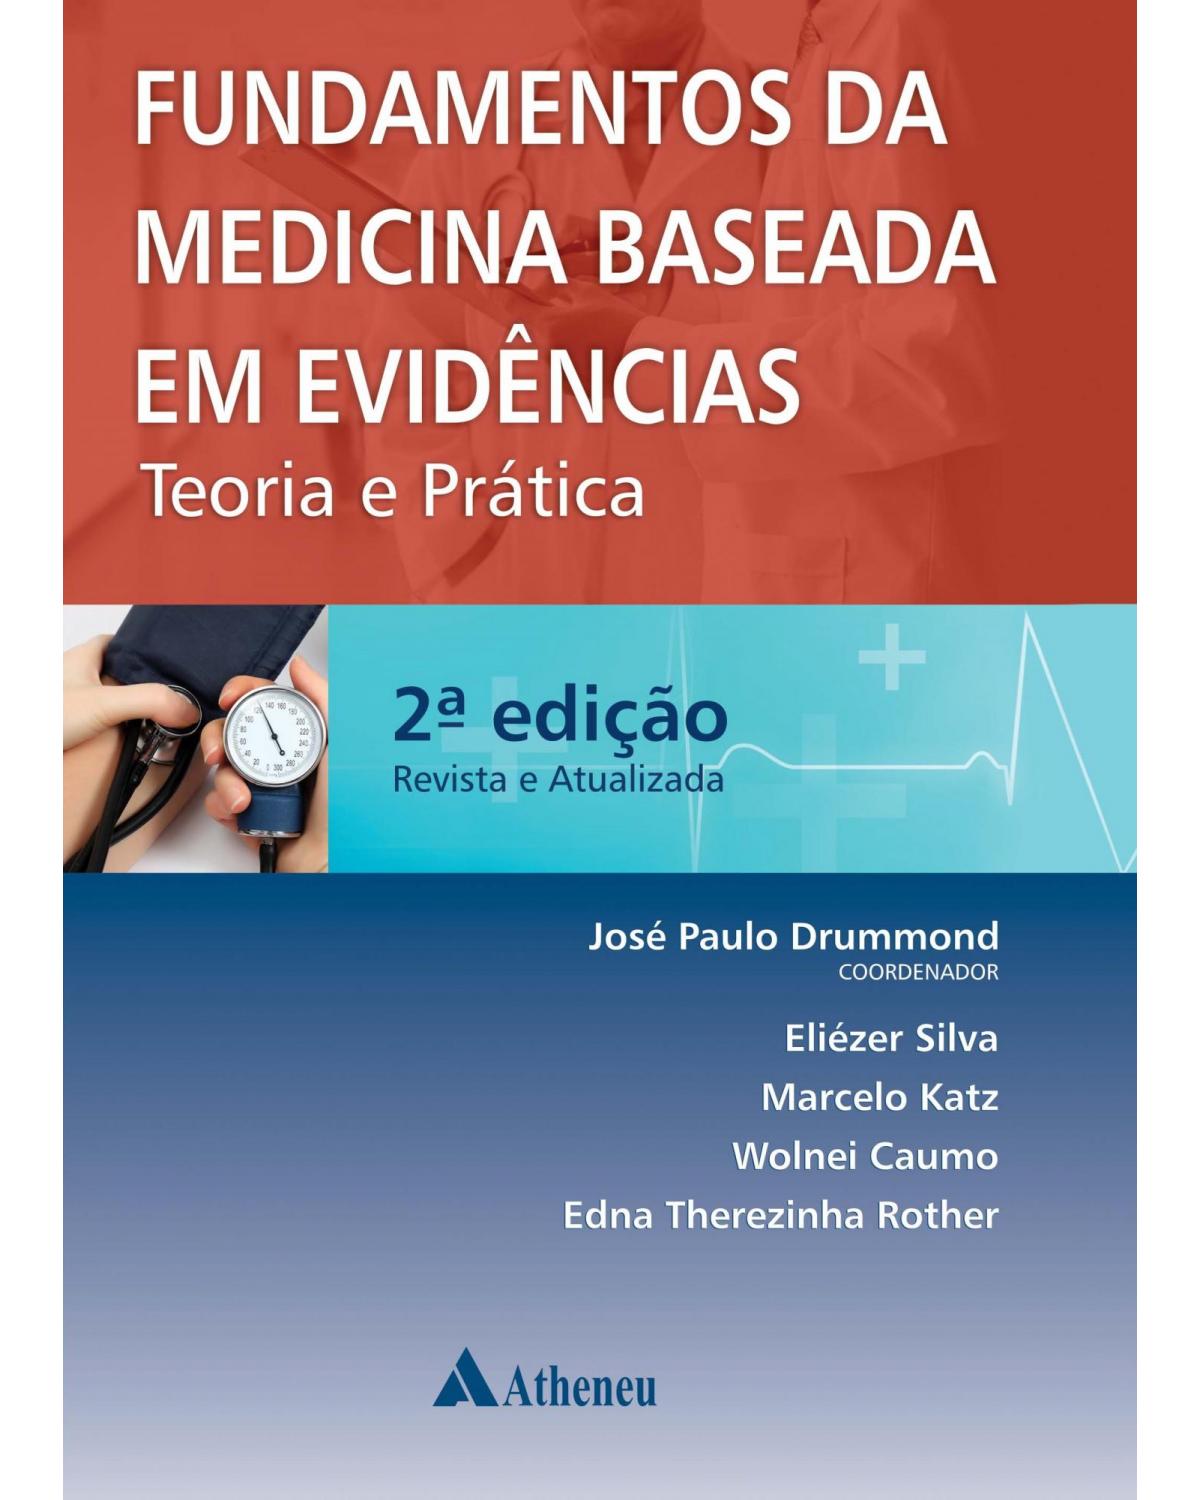 Fundamentos da medicina baseada em evidências - teoria e prática - 2ª Edição | 2014